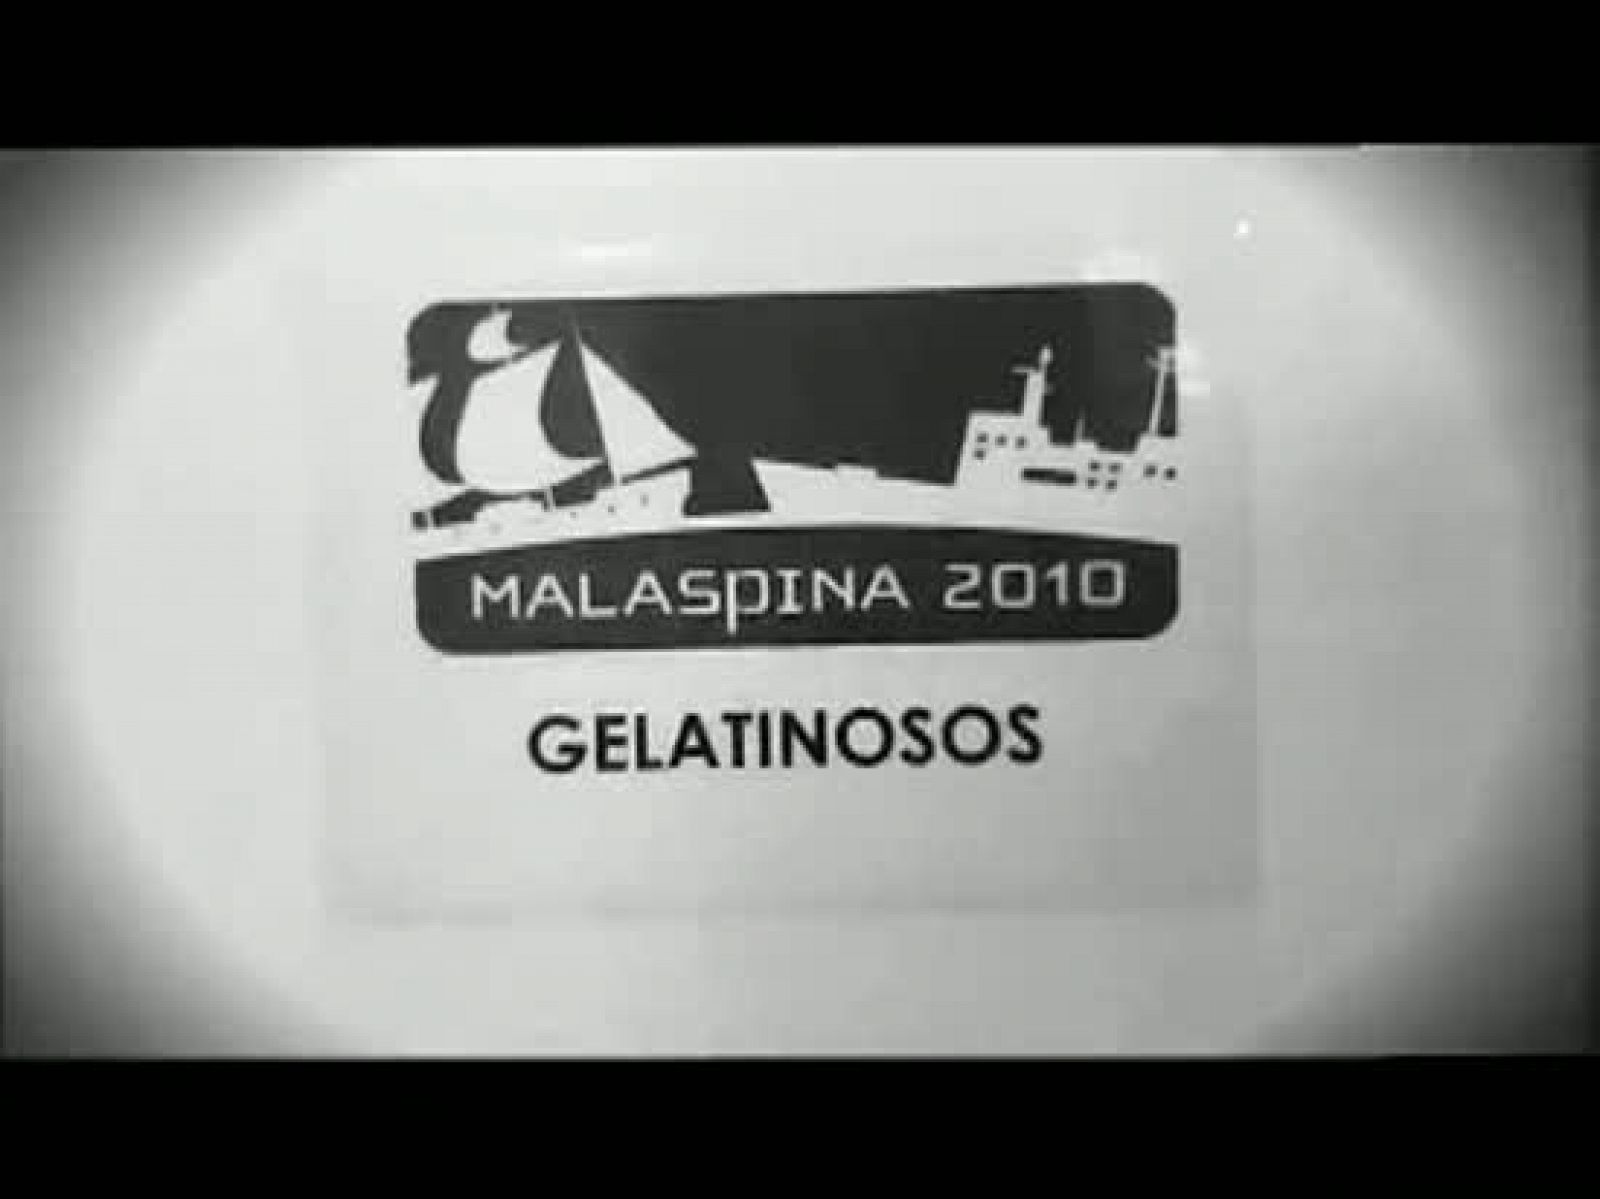 La Expedición Malaspina estudia los animales gelatinosos